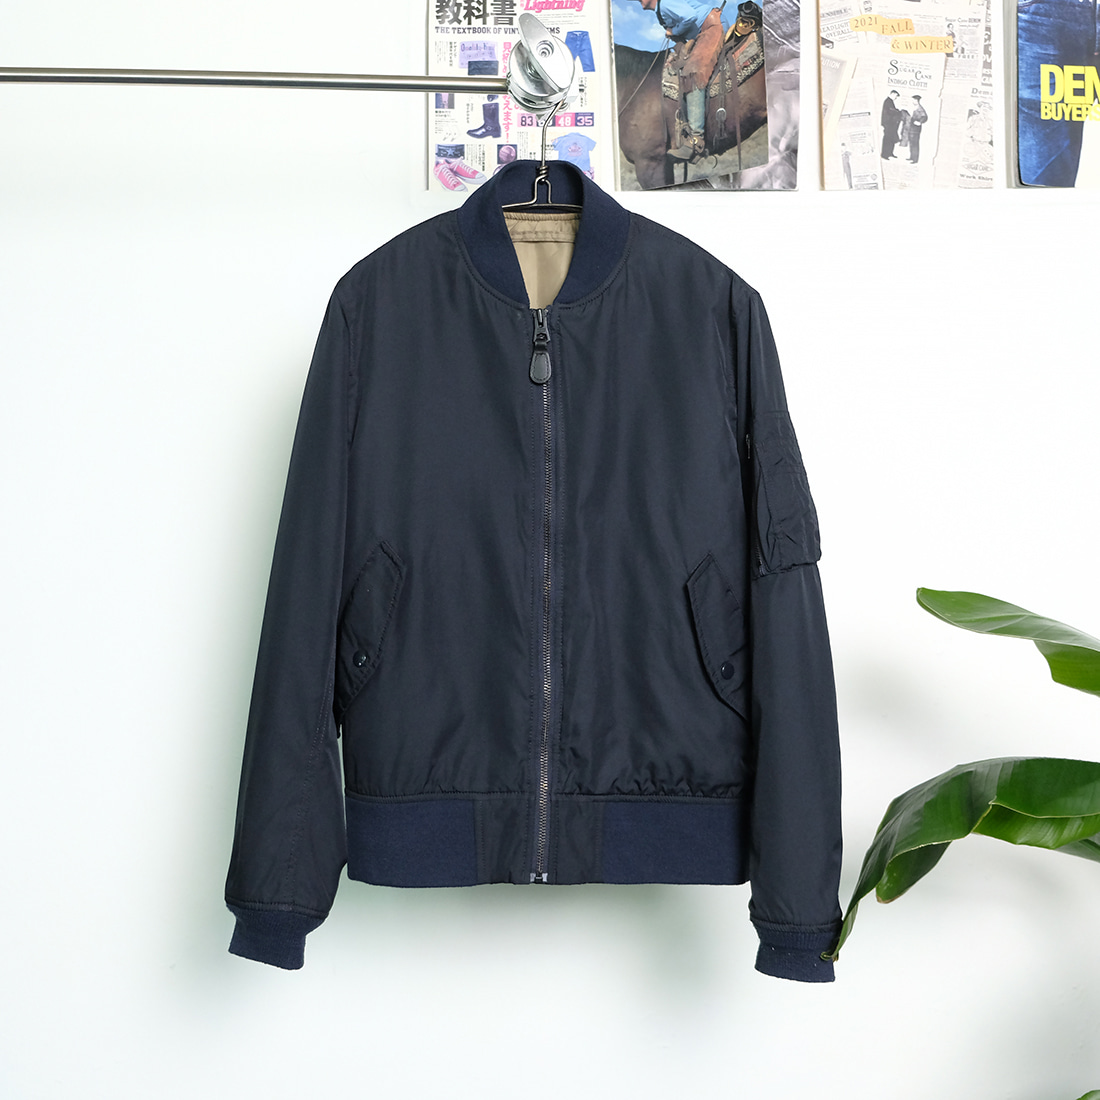 알파인더스트리  Alpha industries limonta fabric primaloft ma-1 jacket